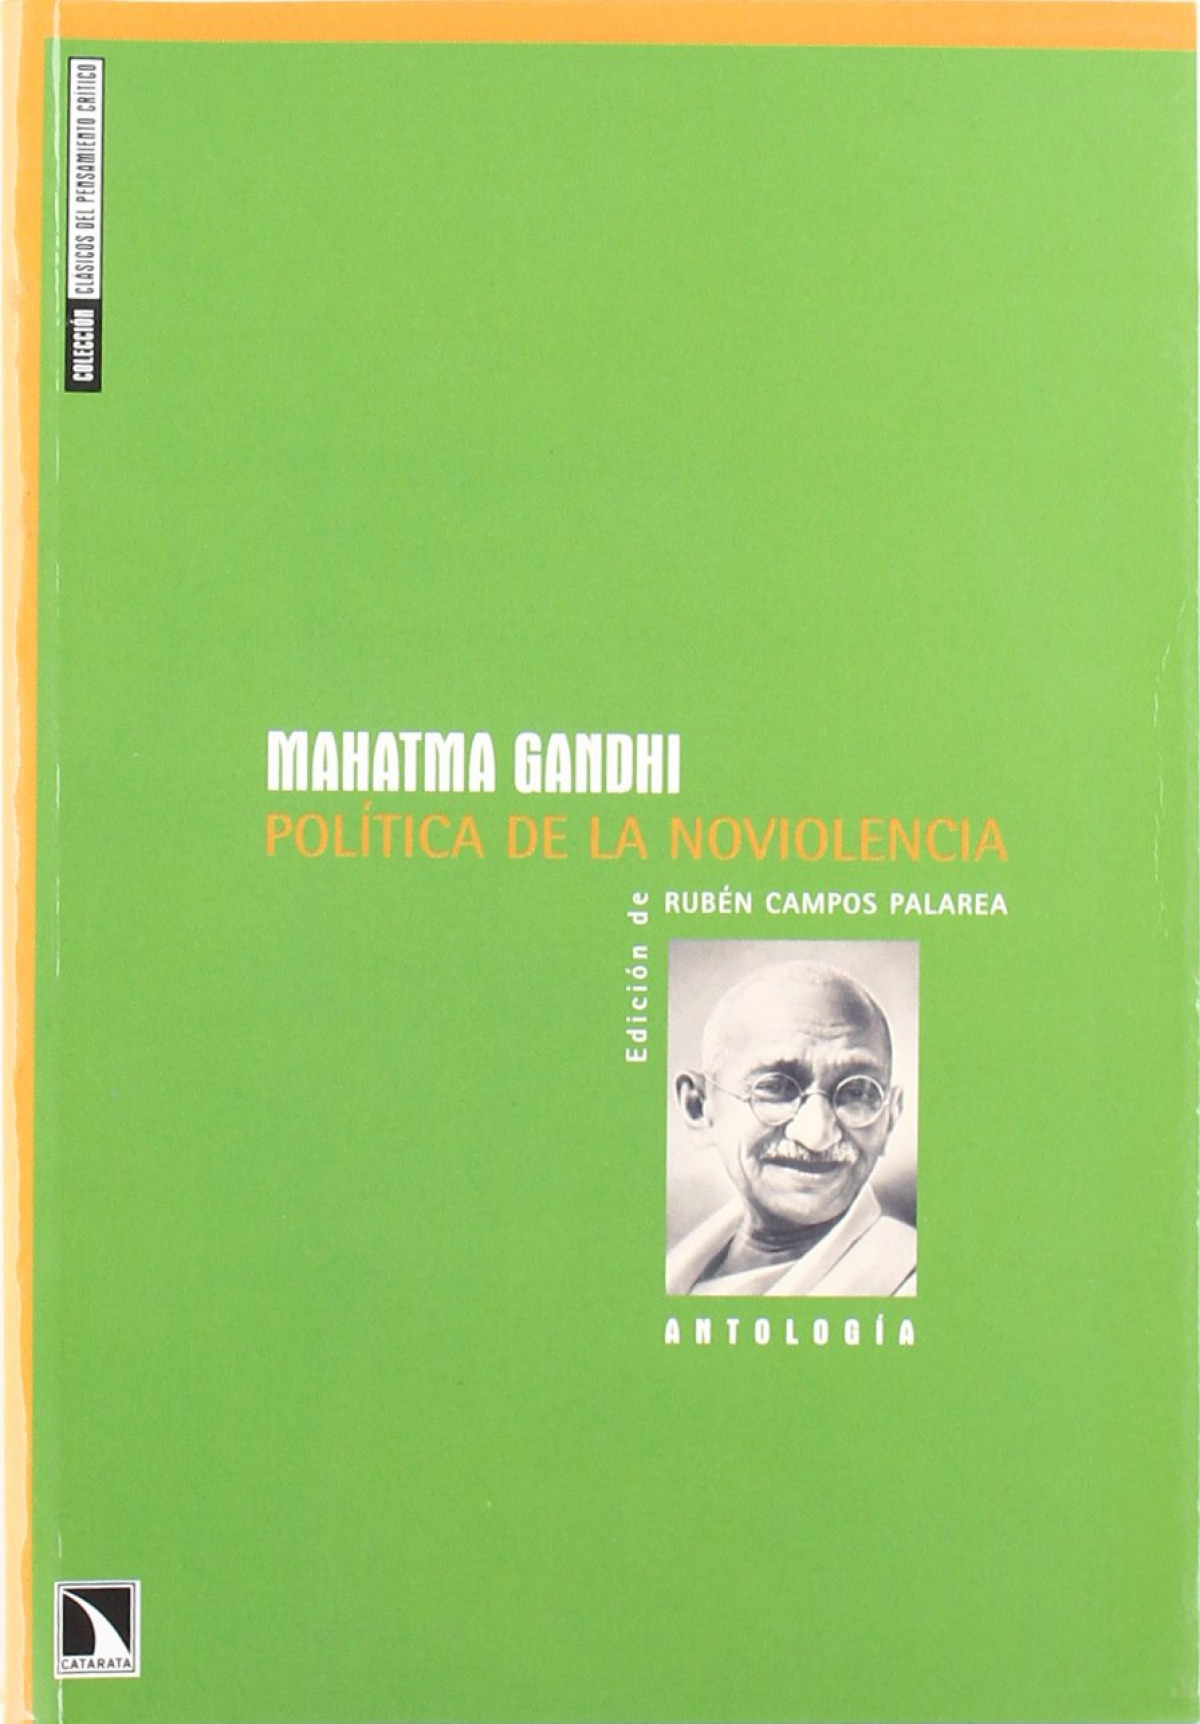 Politica de la noviolencia - Gandhi, Mahatma